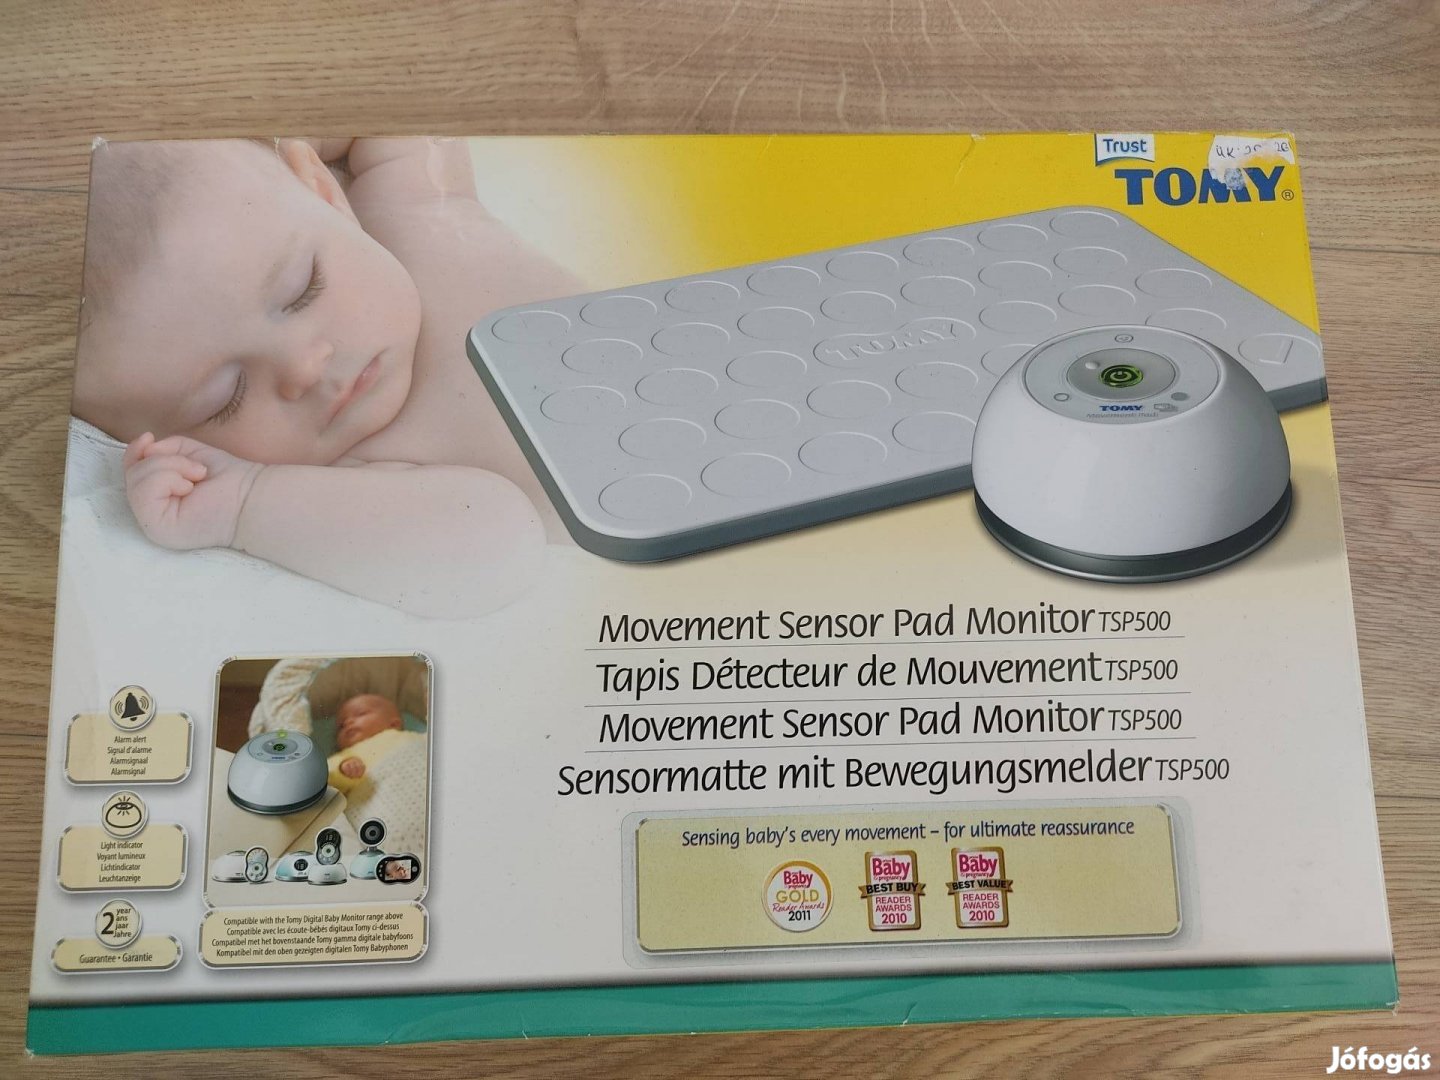 Tomy trust tps 500 légzés baba figyelő készülék 